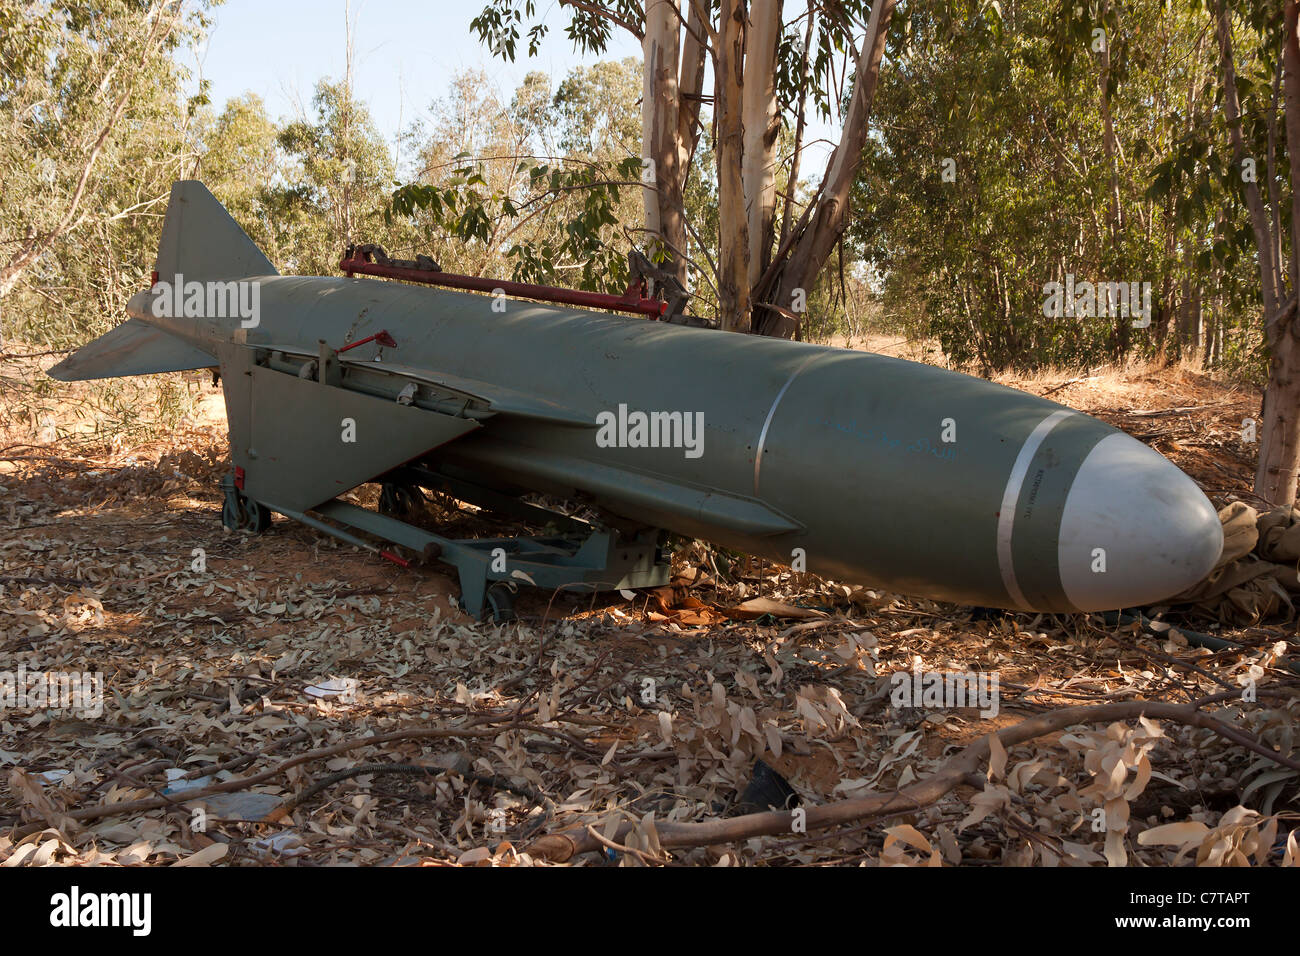 P 21 missiles de croisière guidée radar Styx utilisé par le Colonel Kadhafi guerre conflit arme Kadhafi civile Banque D'Images